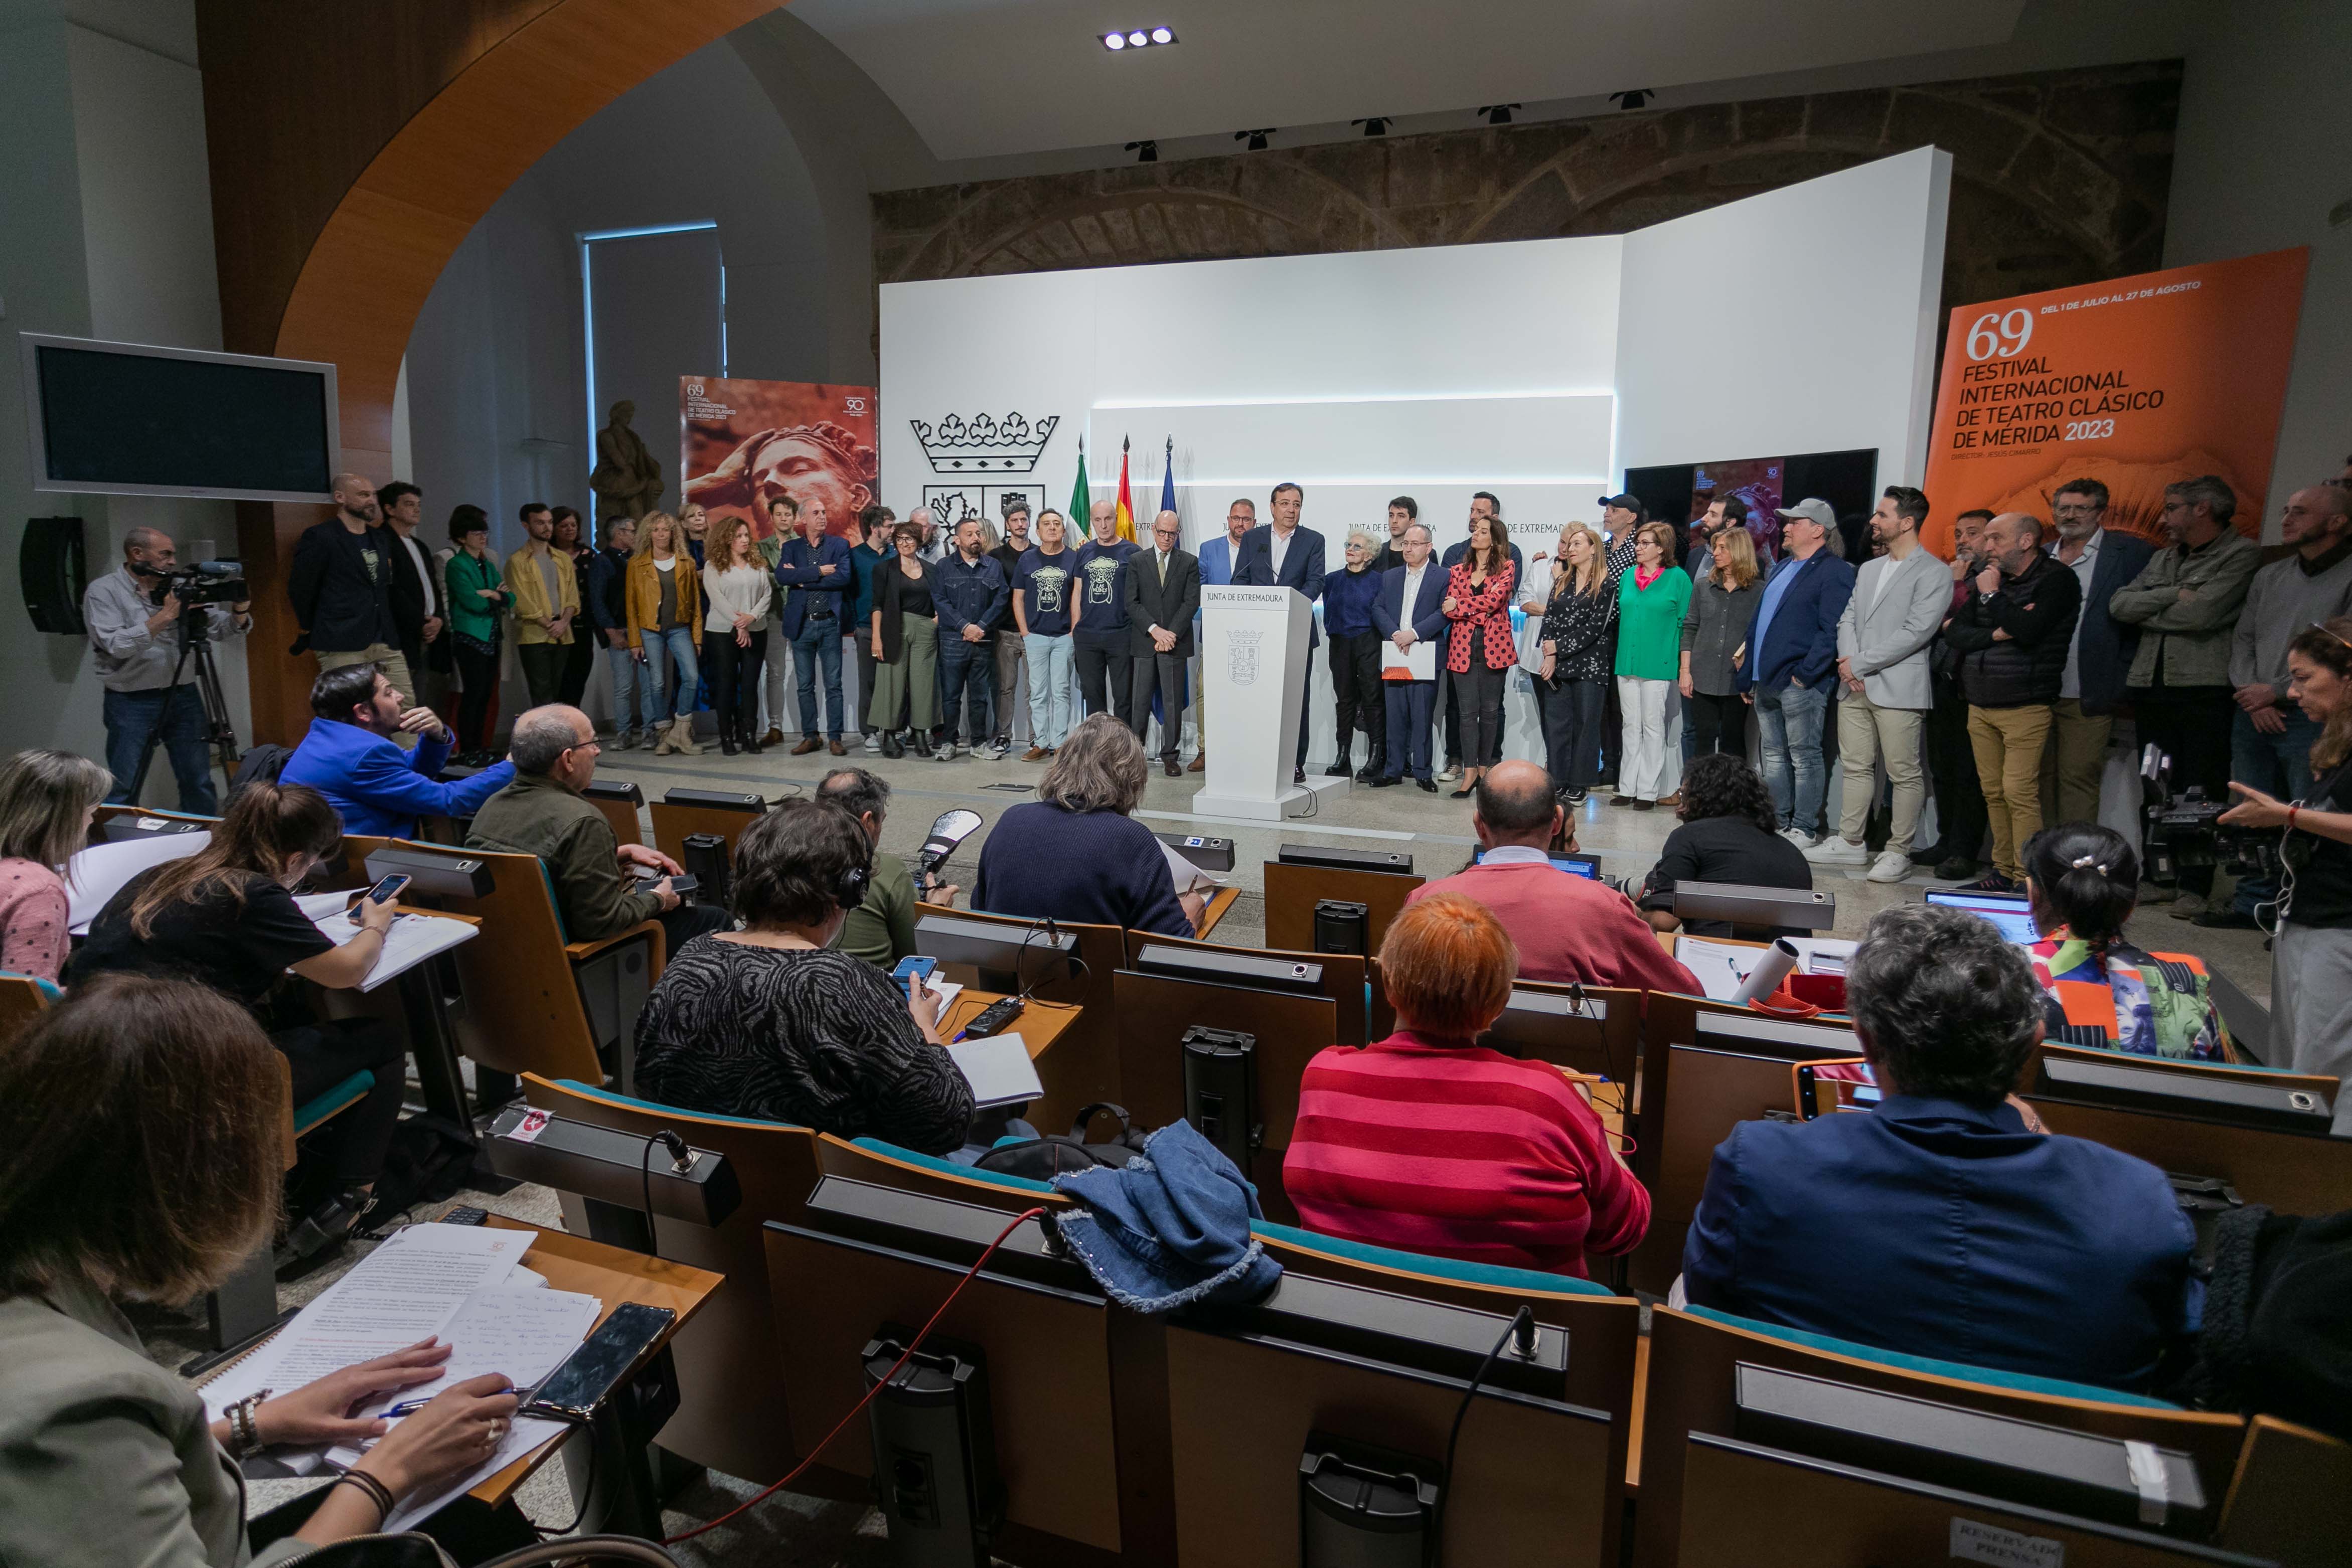 Presentación de la programación de la 69 edición del Festival de Mérida